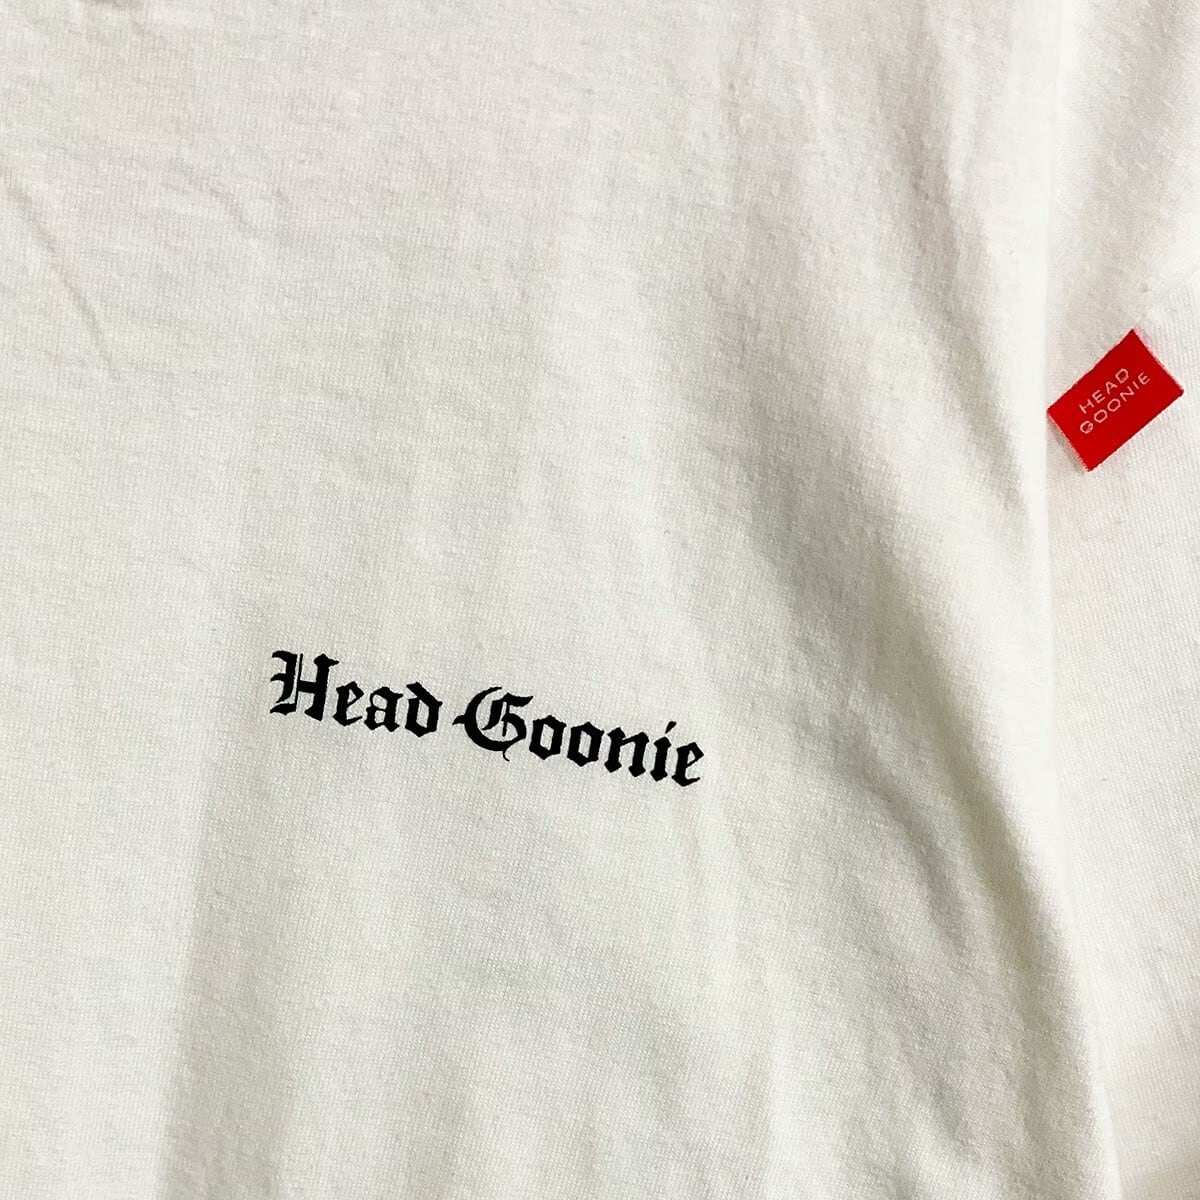 HEADGOONIE 20th Anniversary PIRATES Tshirts / HEAD GOONIE